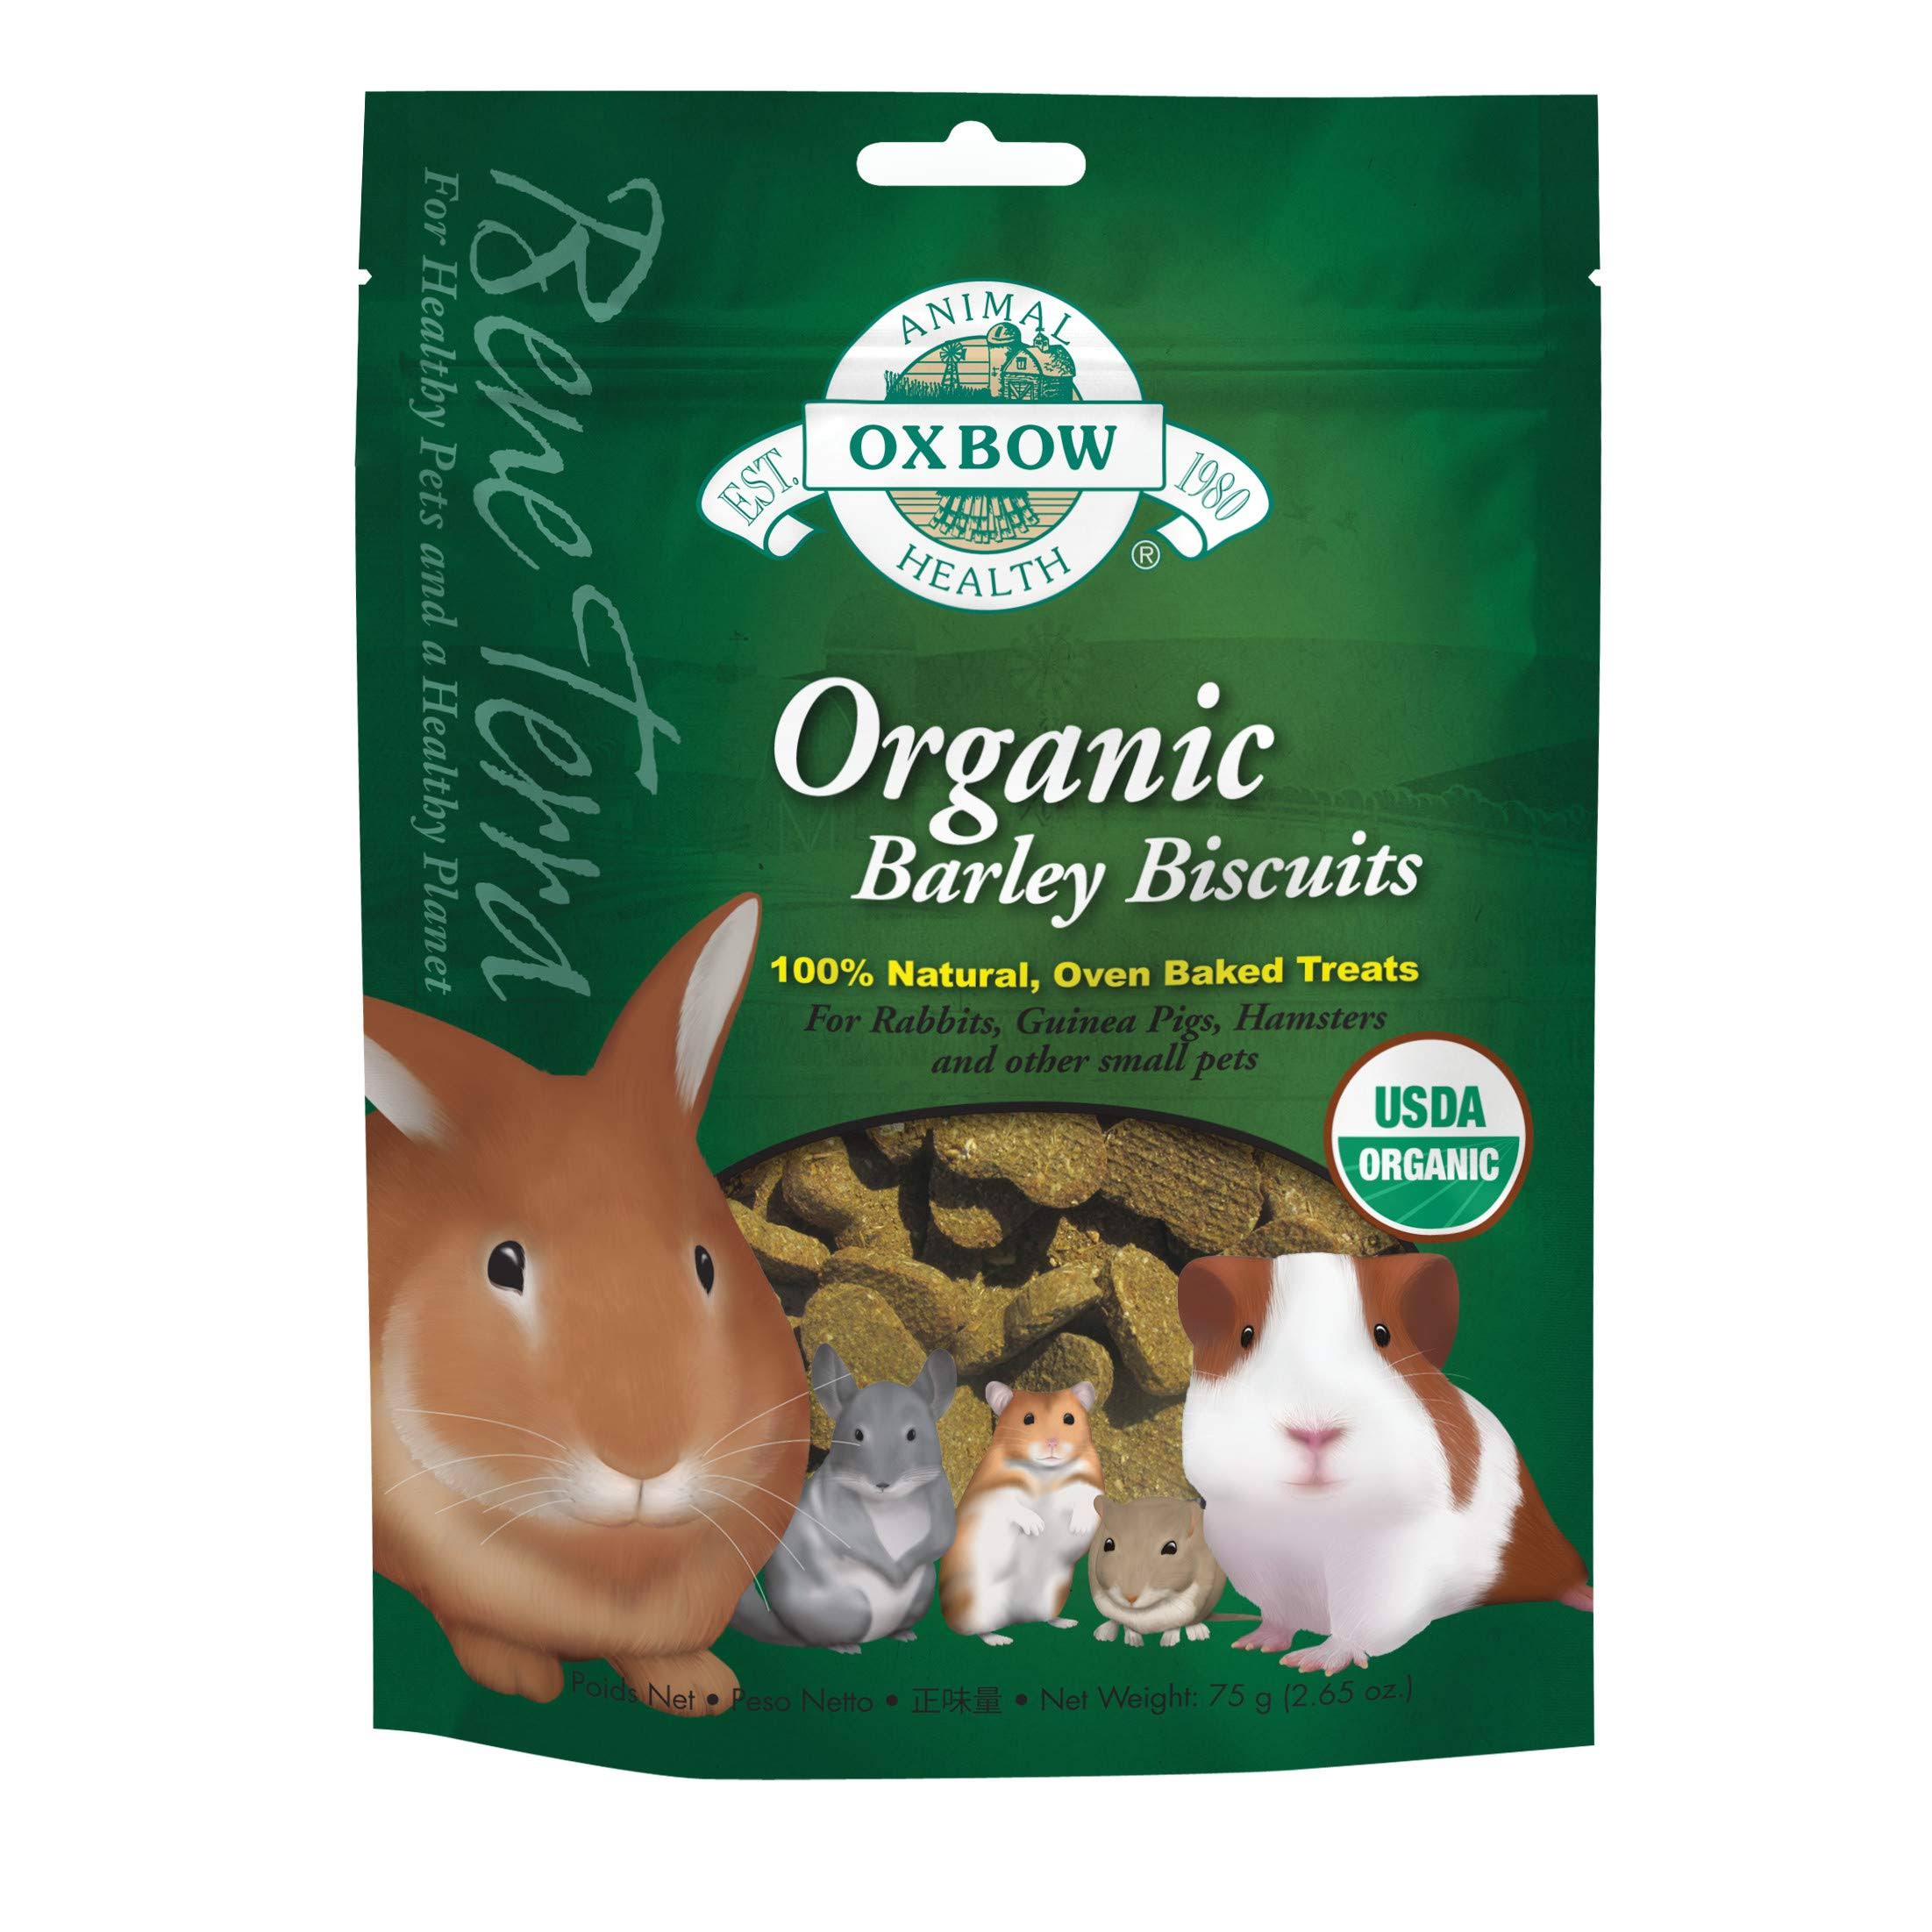 Oxbow Bene Terra Organic Barley Biscuits - 2.65oz